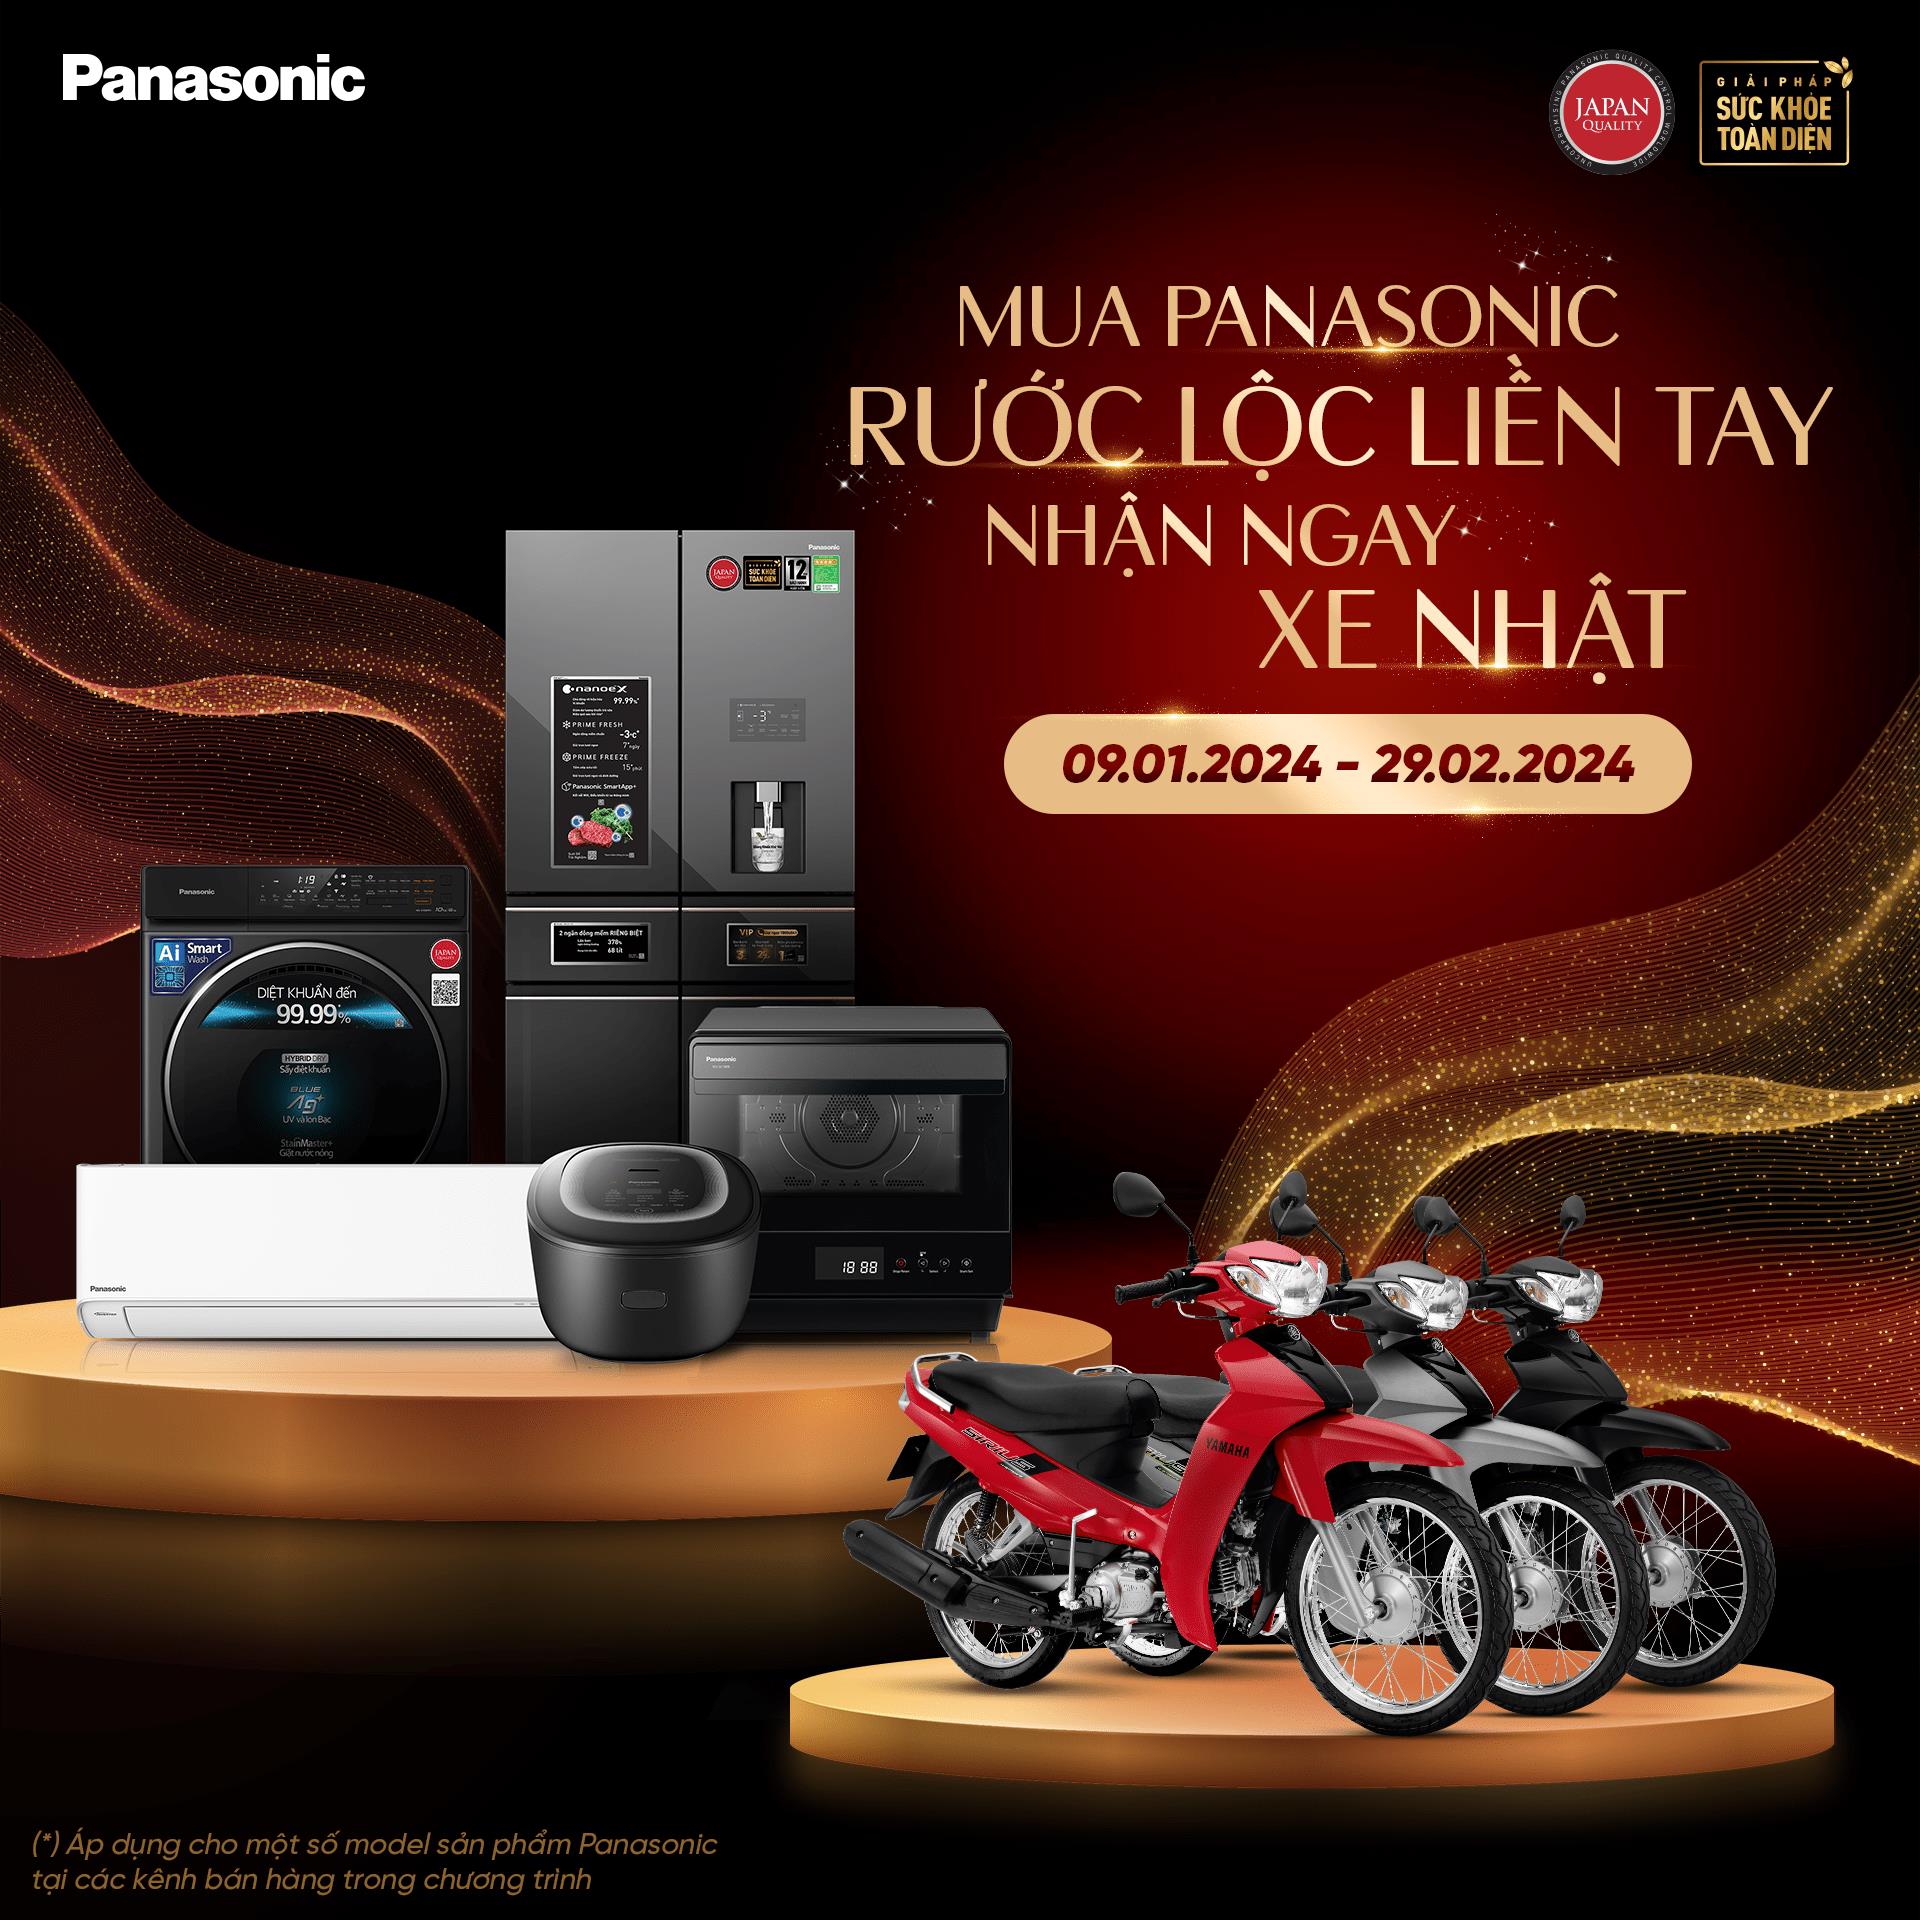 Panasonic tiếp động lực cho ngành bán lẻ bằng chương trình hậu mãi hấp dẫn- Ảnh 2.